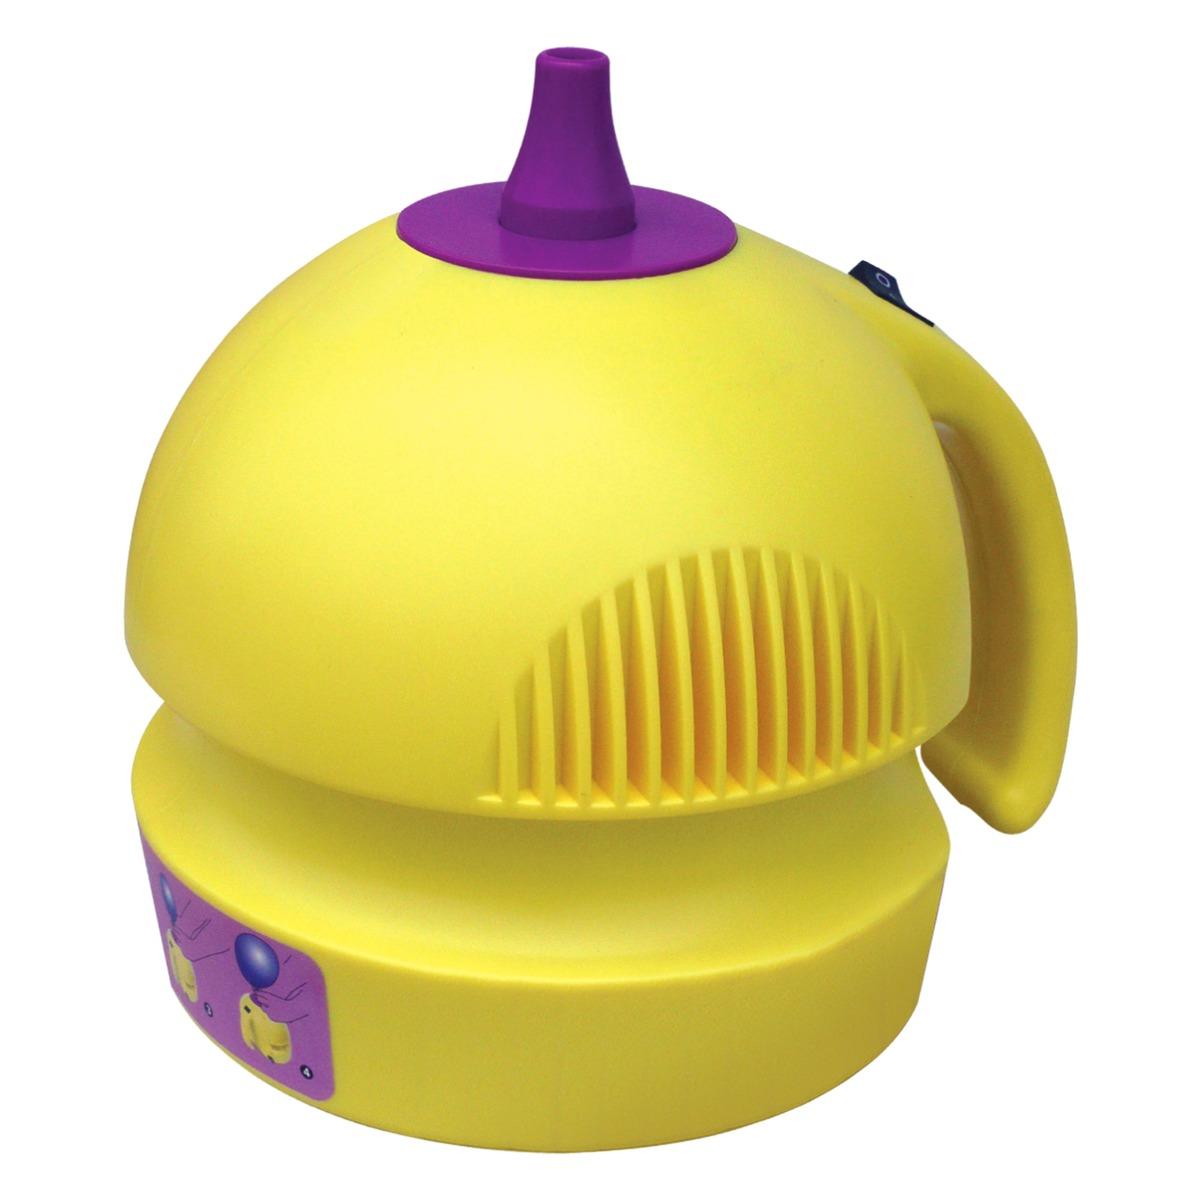 Pompe à ballons électrique - 18,5 x 15 x H 18 cm - Jaune, Violet